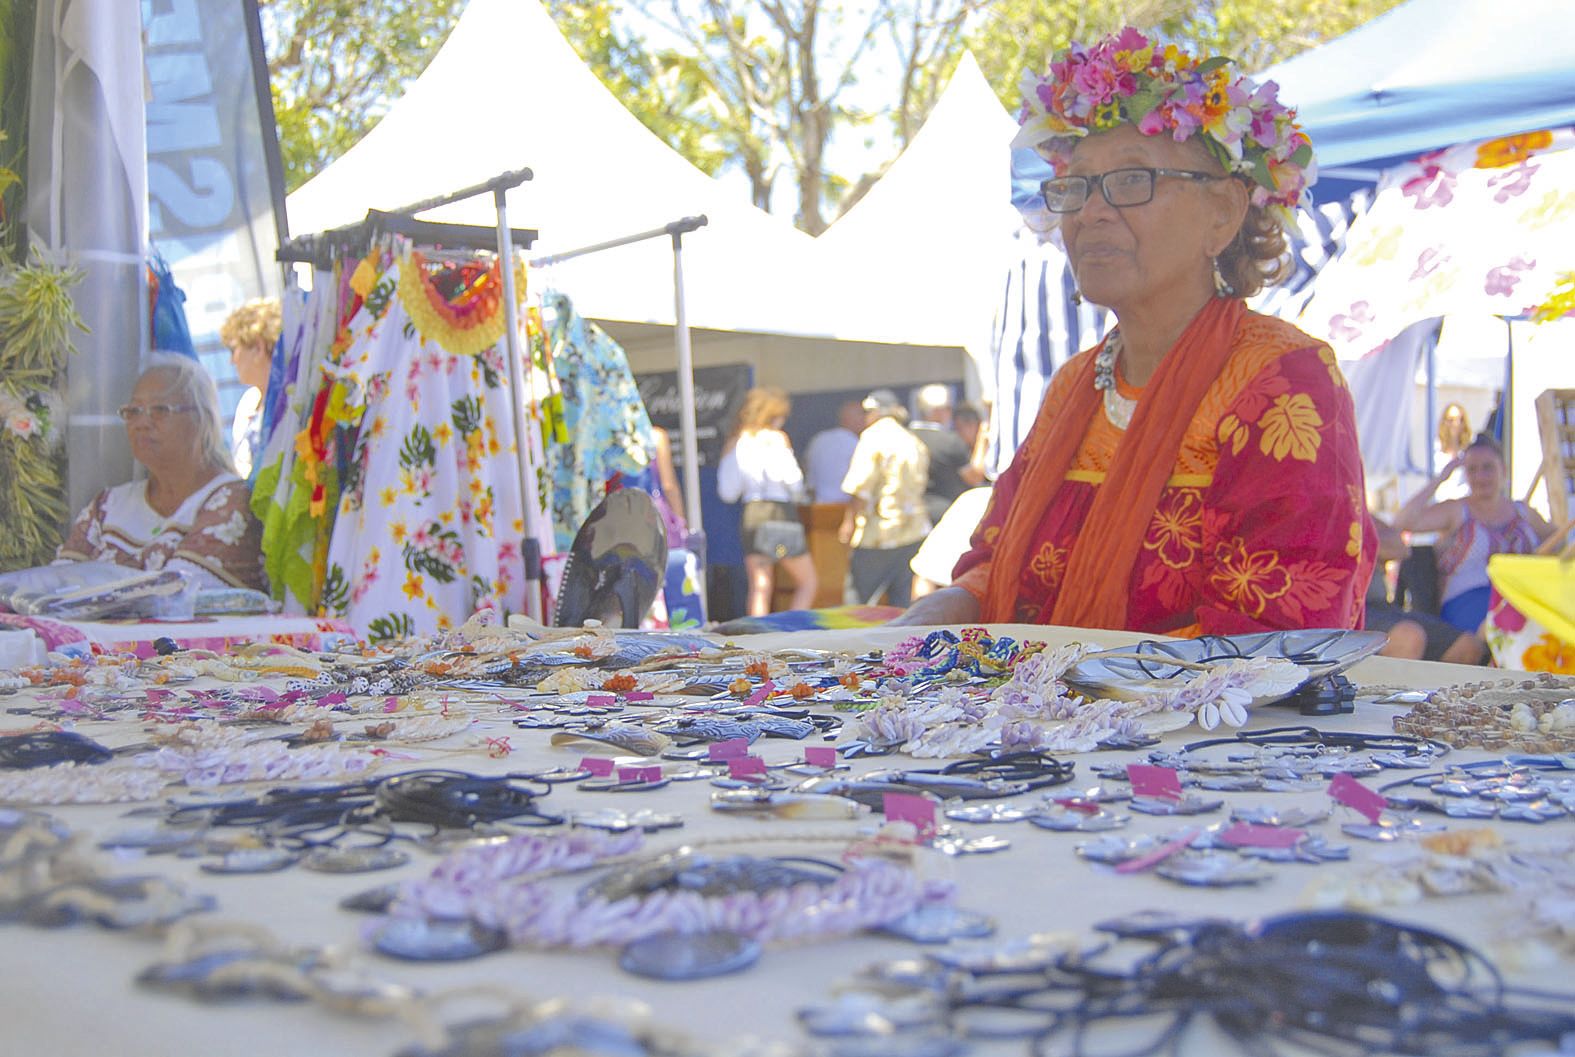 Comme chaque année, une délégation de Polynésie a tenu deux stands particulièrement fleuris, ornés de bijoux en nacre, de tifaifai et de sacs en pandanus tressés.